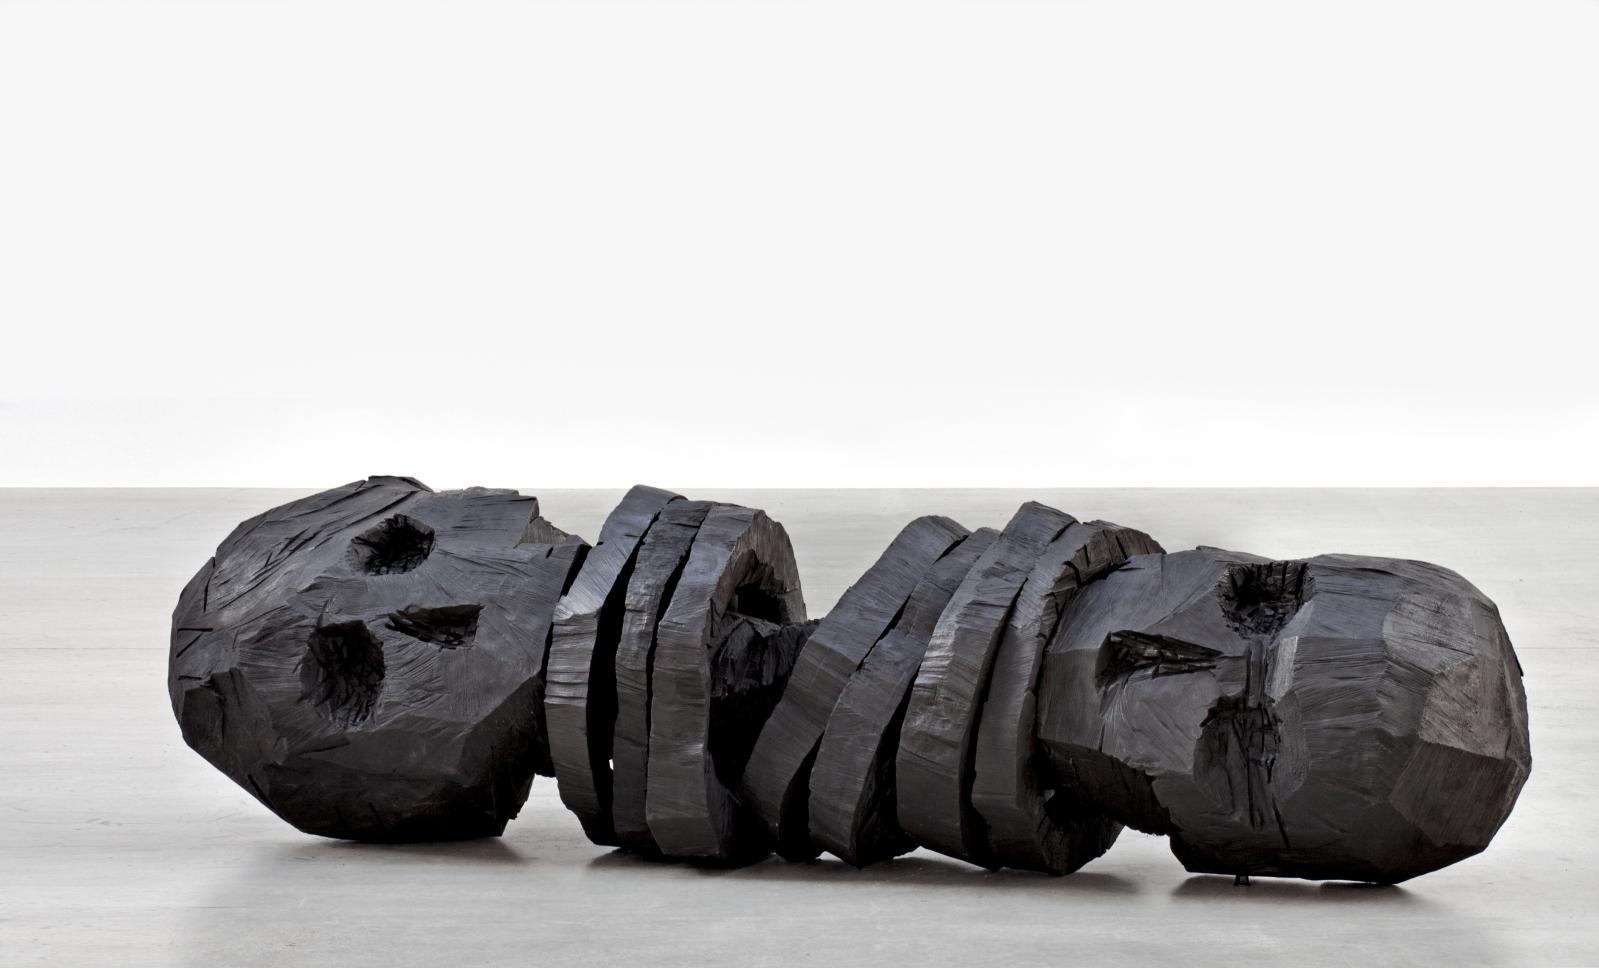 Georg Baselitz (né en 1938), Zero Ende, 2013, bronze moulé sur bois, 94 x 348 x 91,5 cm, éd. 1/3. Courtesy galerie Thaddaeus Ropac, photo Charles Dupr